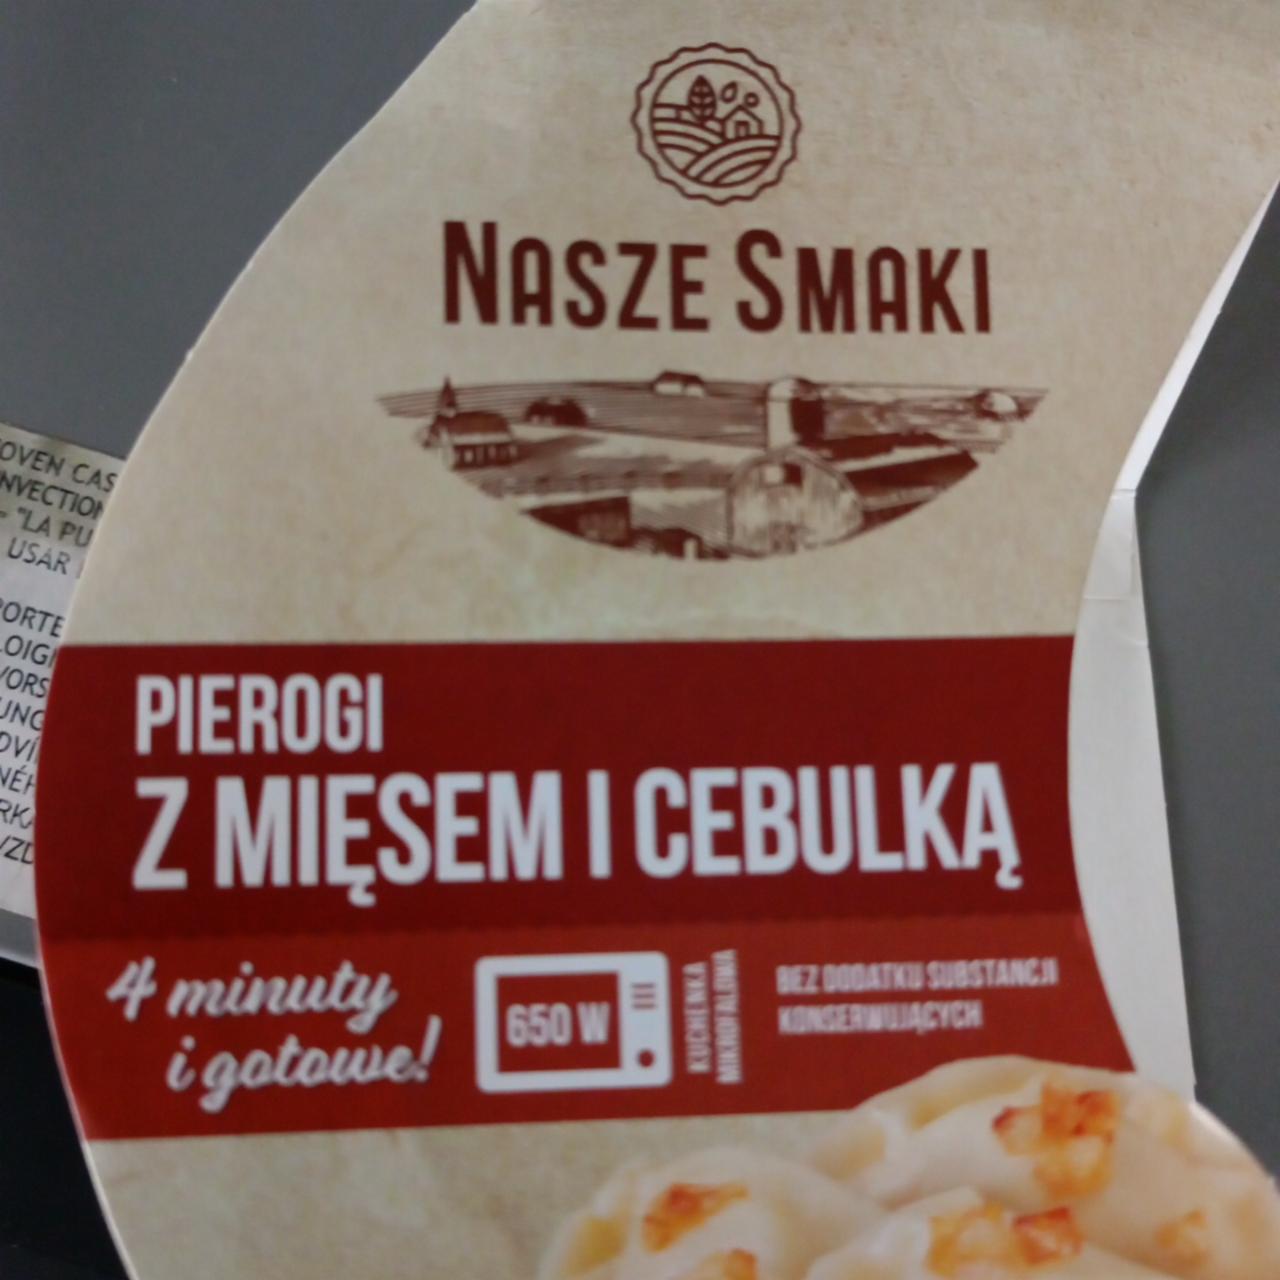 Фото - Pierogi z mięsem i cebulką Nasze smaki